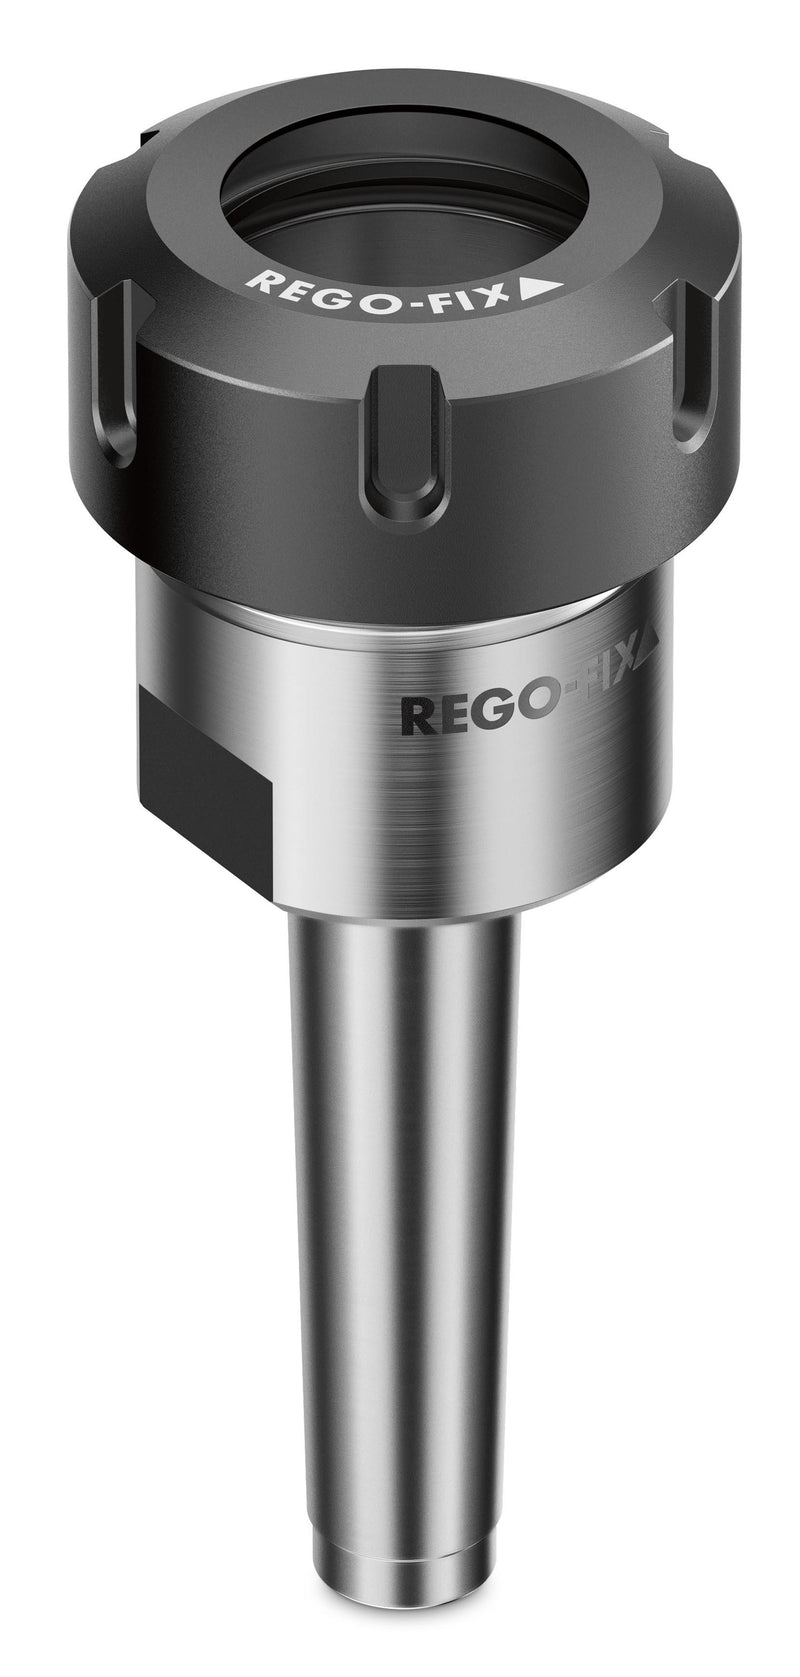 Rego-Fix MK 3 / ER 25 x 052 Tool Holder 2703.12500 (0646060)